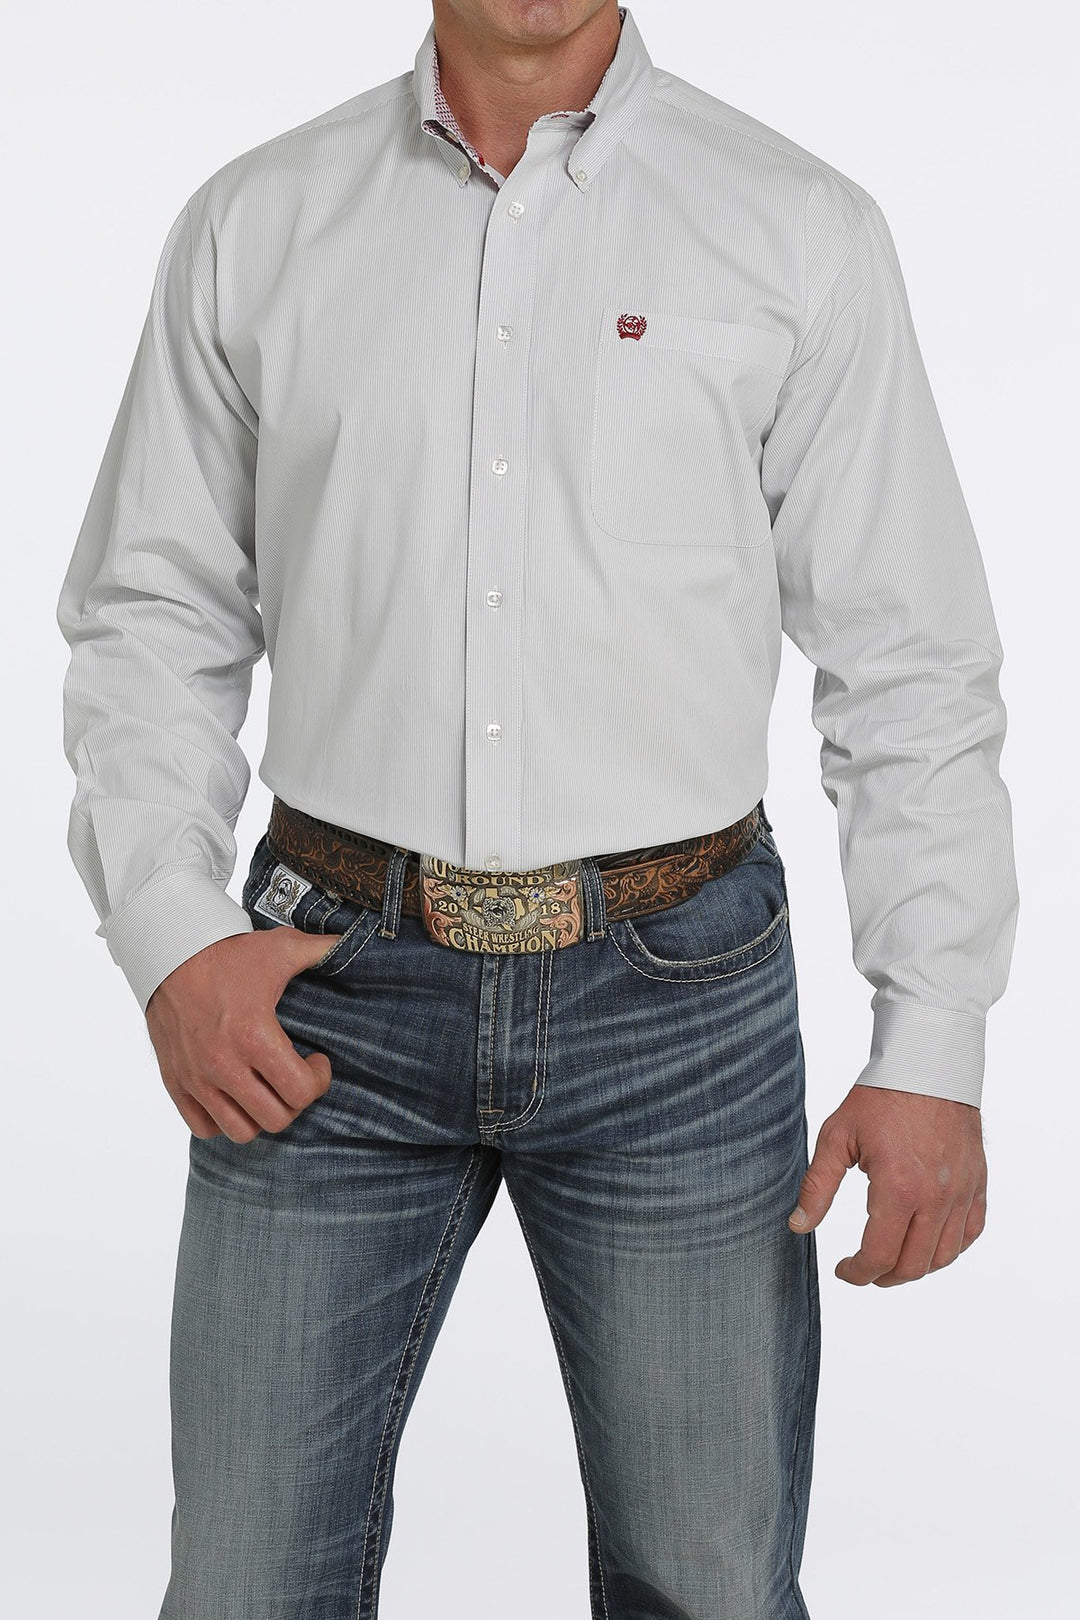 Camicia western da uomo con bottoni a righe Cinch Stripe azzurro/crema - MTW1105464 